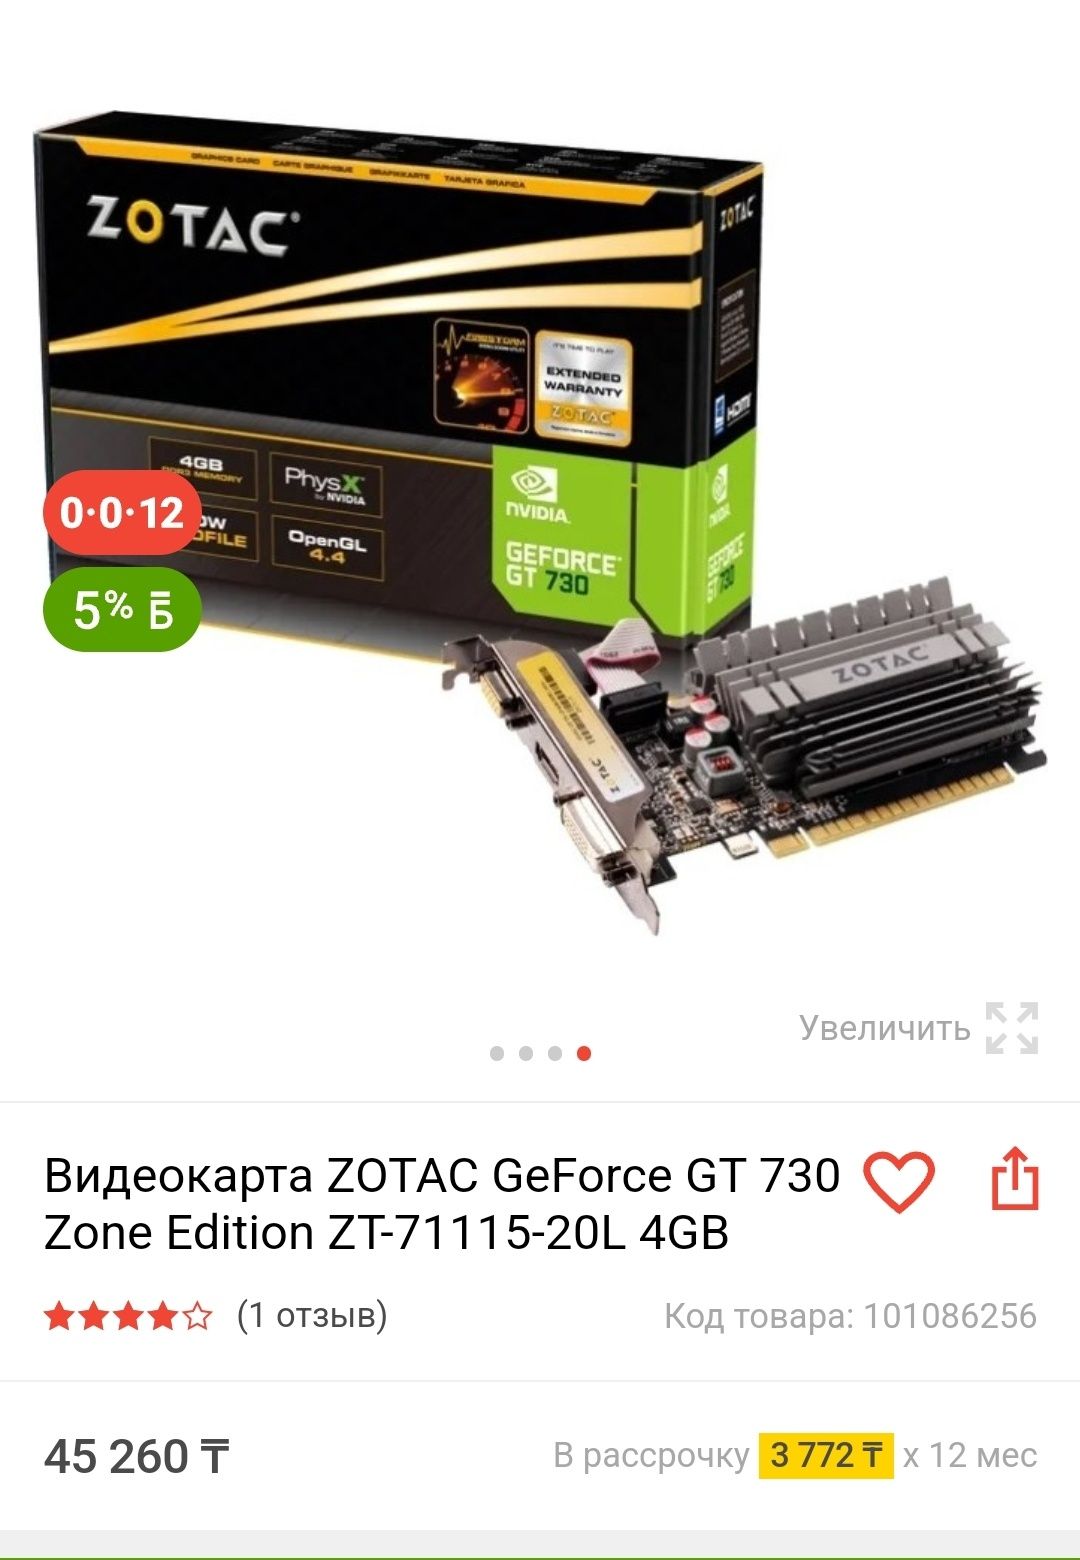 ZOTAC Geforce 730 4gb